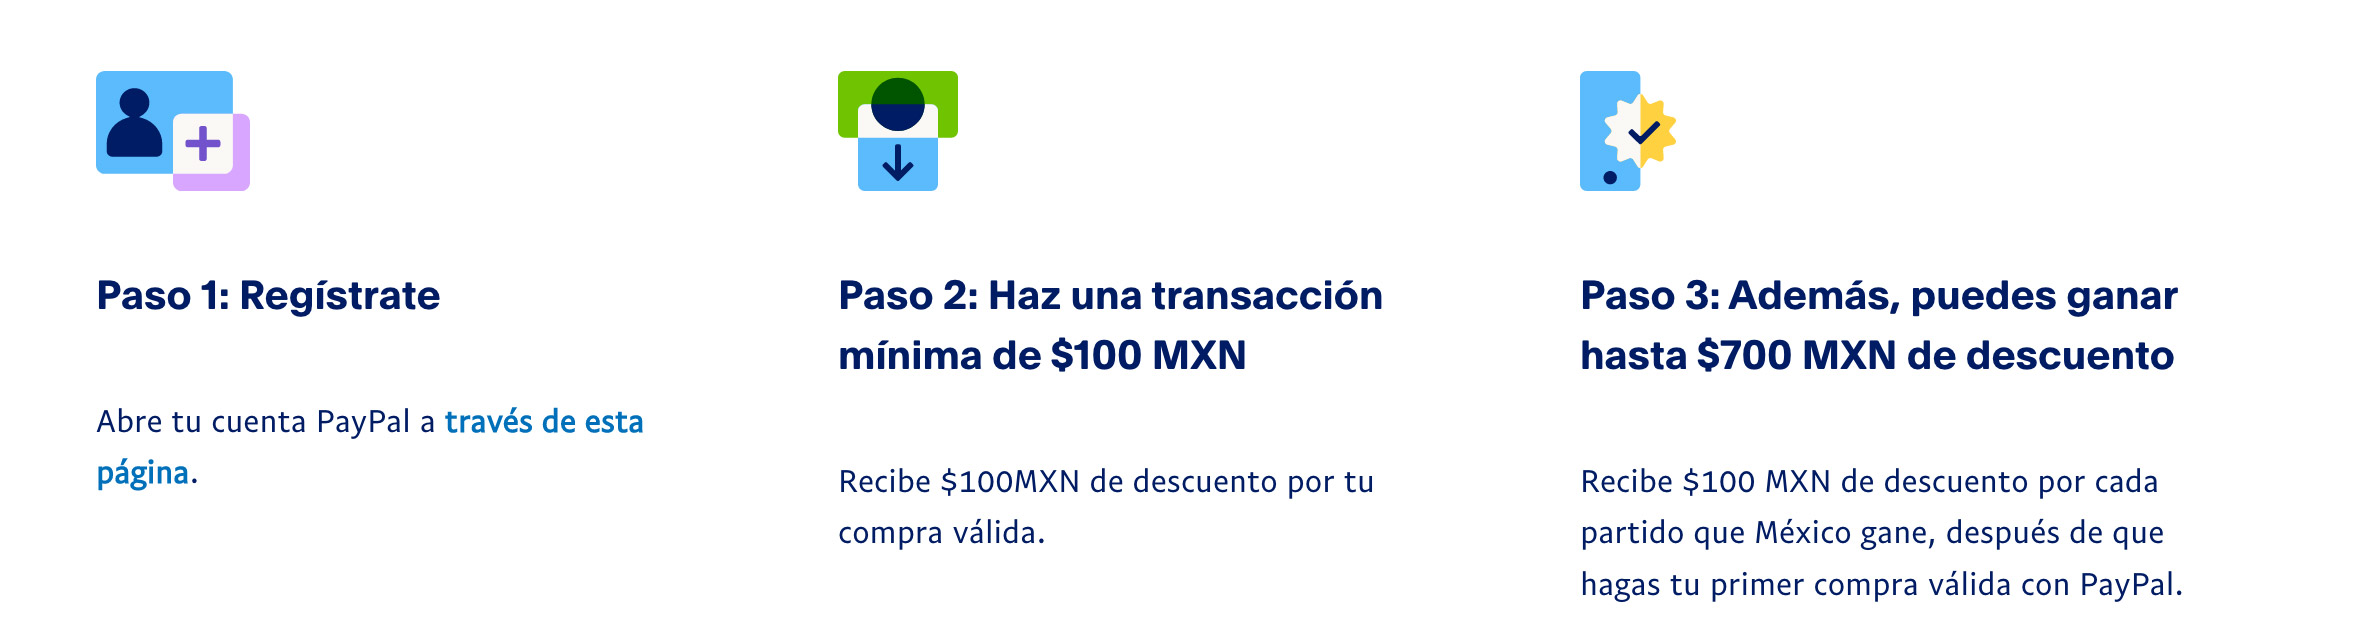 Paso 1: Regístrate. Abre tu cuenta PayPal a través de esta página. Paso 2: Haz una transacción mínima de $100 MXN. Recibe $100MXN de descuento por tu compra válida. Paso 3: Además, puedes ganar hasta $700 MXN de descuento. Recibe $100 MXN de descuento por cada partido que México gane, después de que hagas tu primer compra válida con PayPal.